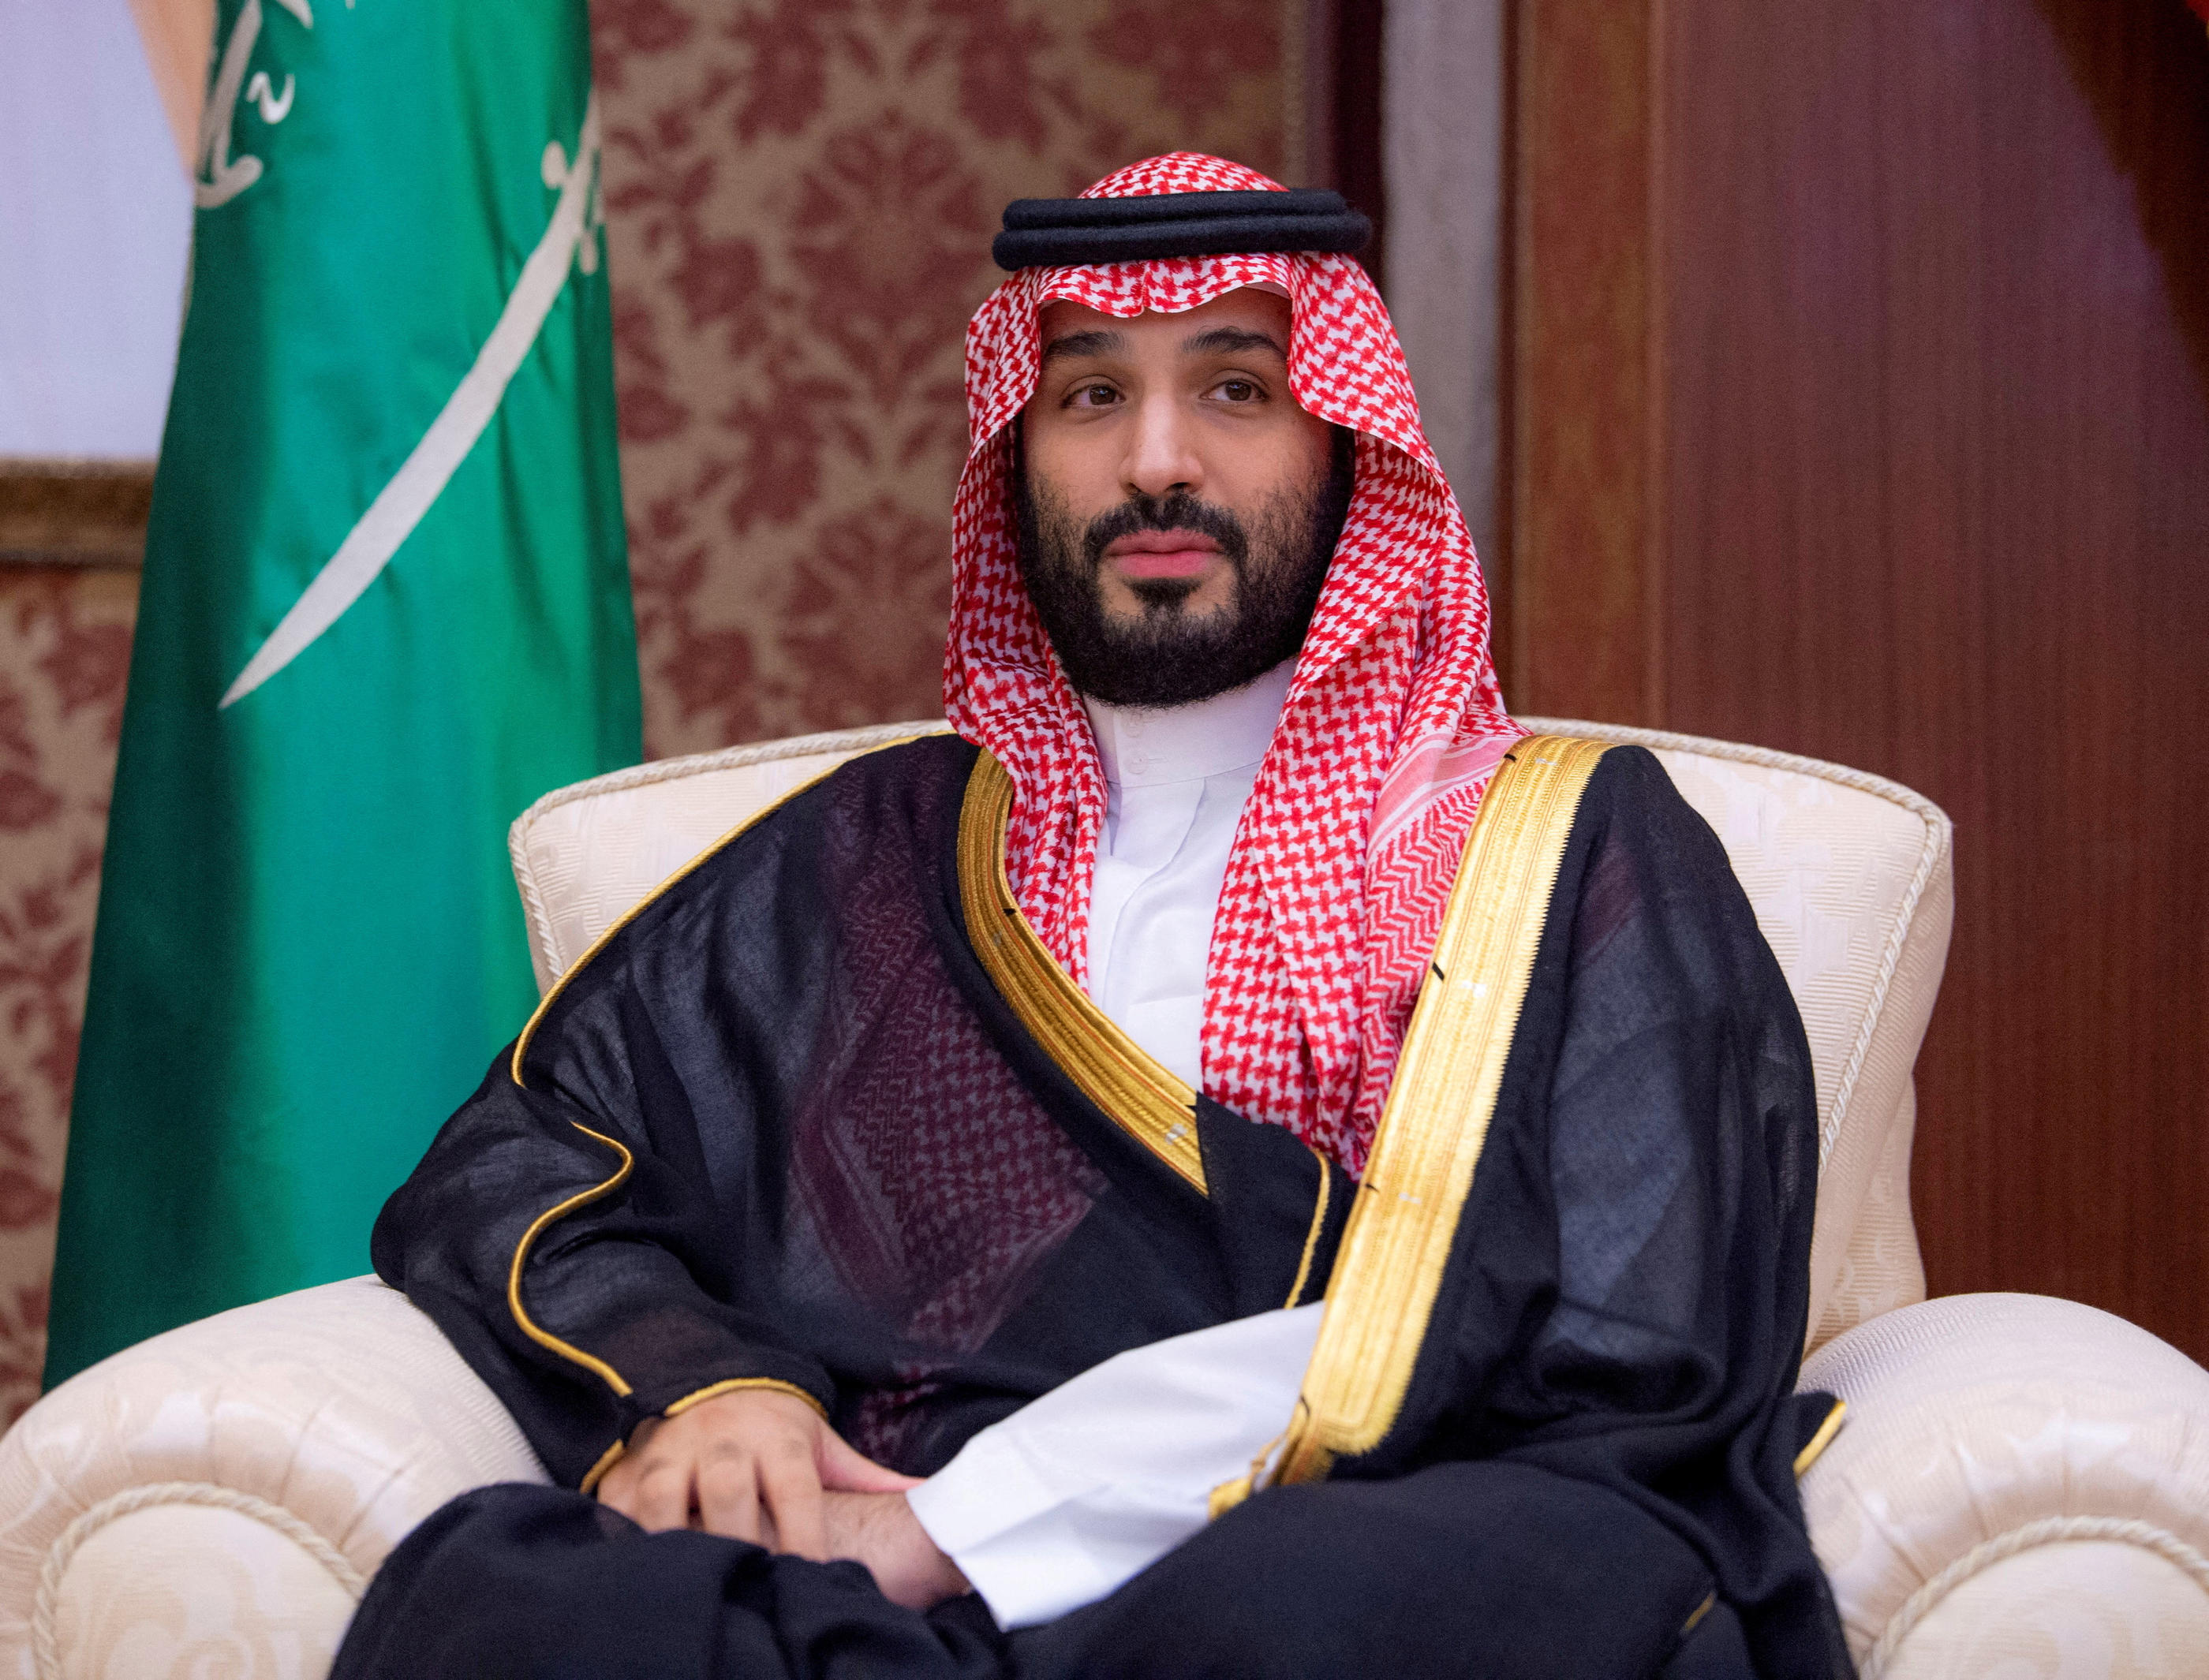 Le prince héritier saoudien Mohammed ben Salmane s'est exprimé lors d'une interview à la chaîne américaine Fox News. REUTERS/Cour royale saoudienne